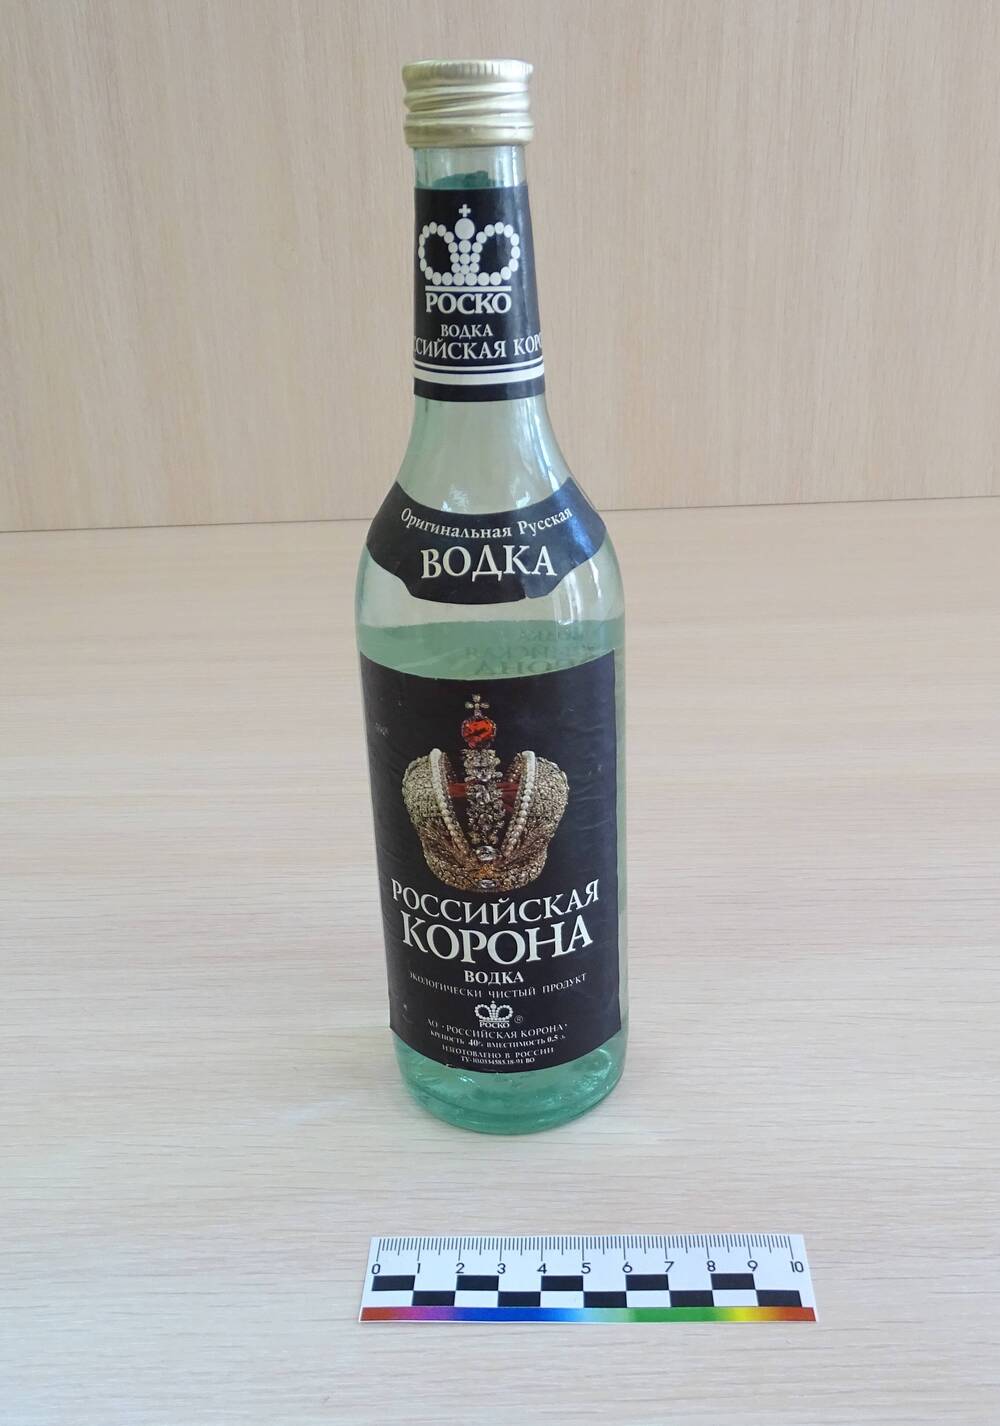 Бутылка «Российская корона» 0,5л, стекло.  АО «Роско», г. Сочи. 1992 год.